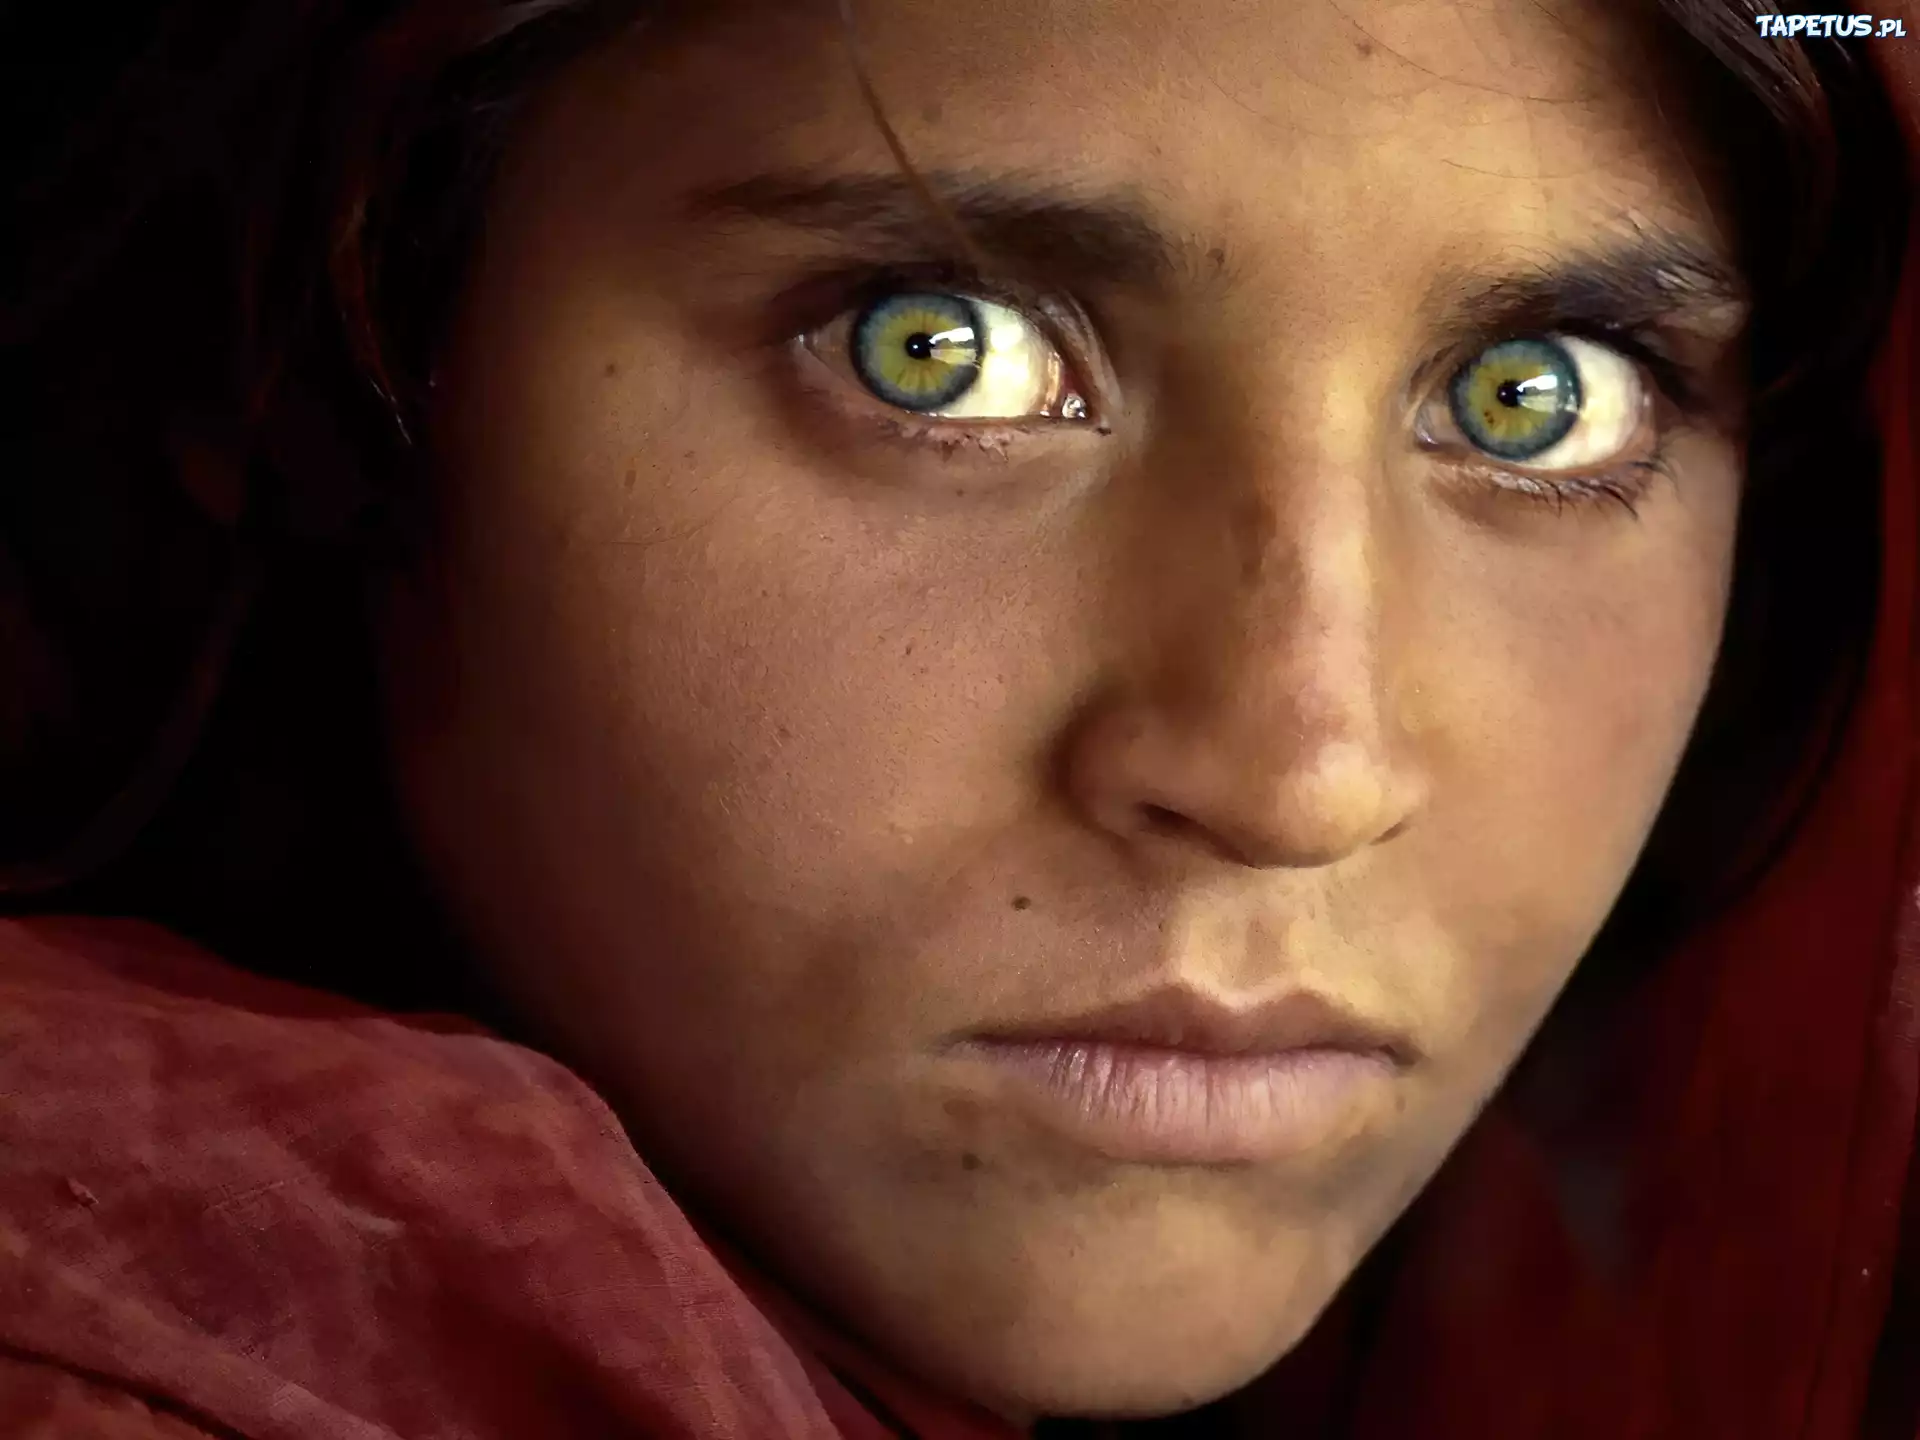 Самого редкого человека. Шарбат Гула 2021. Стив МАККАРРИ Шарбат Гула. Шарбат Гула National Geographic. Стив МАККАРРИ Афганская девочка.